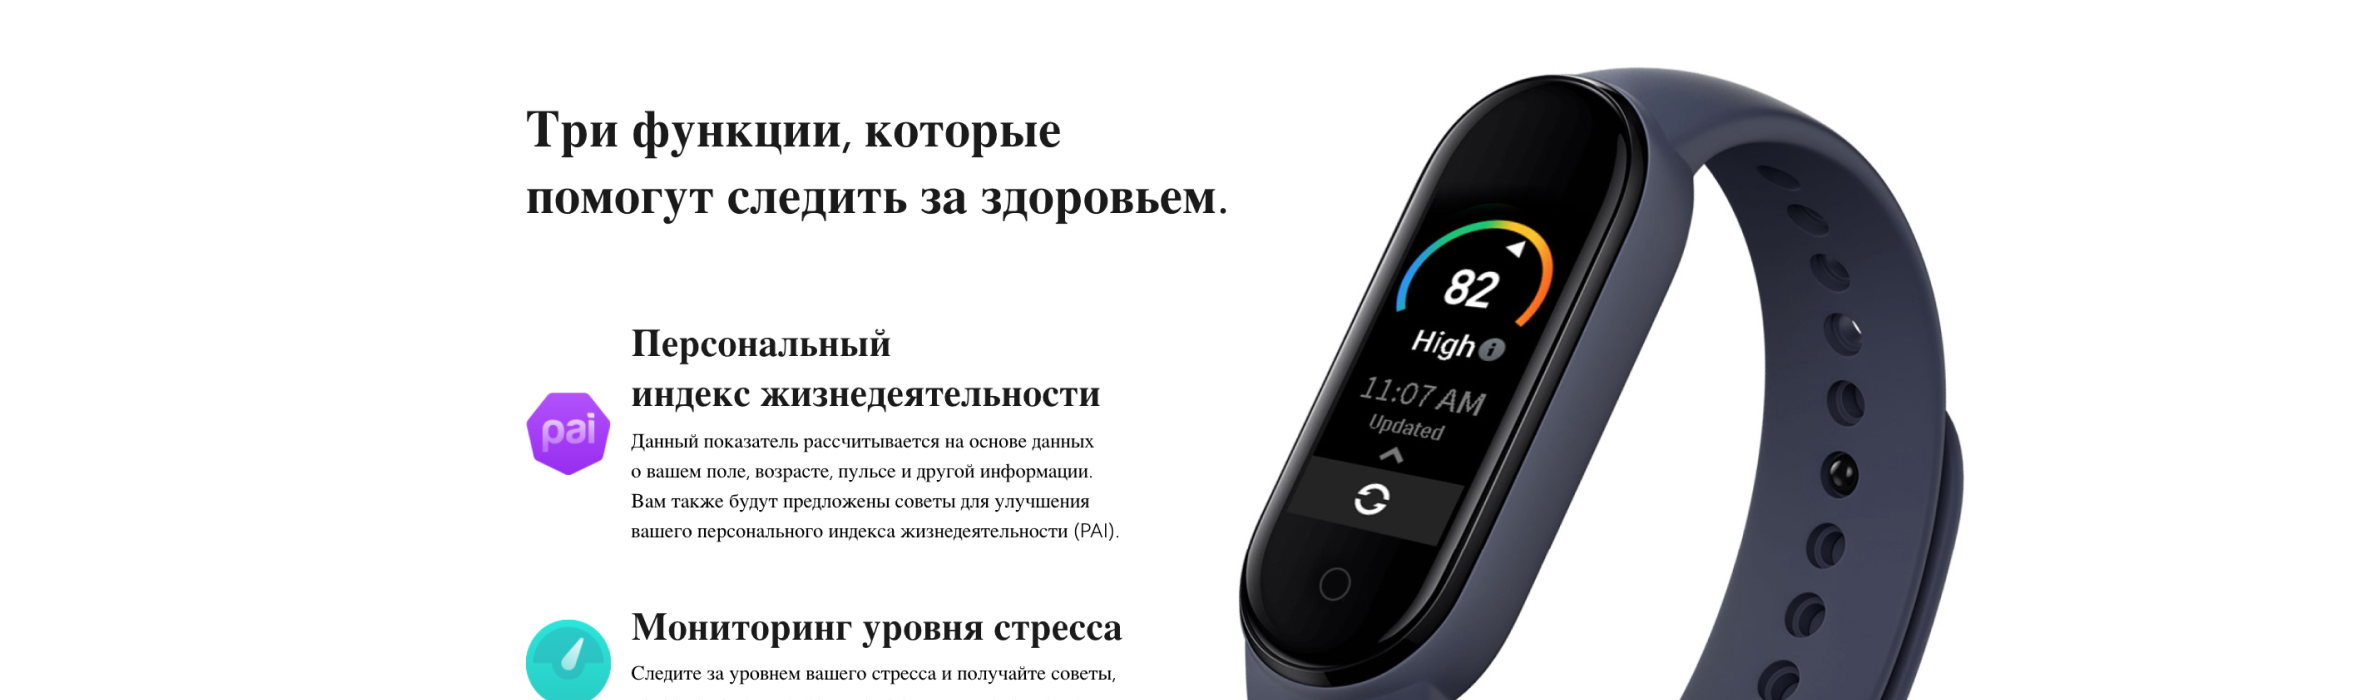 2 способа установить русский язык на xiaomi mi band 5 в китайской версии (cn version) - android и iphone - вайфайка.ру